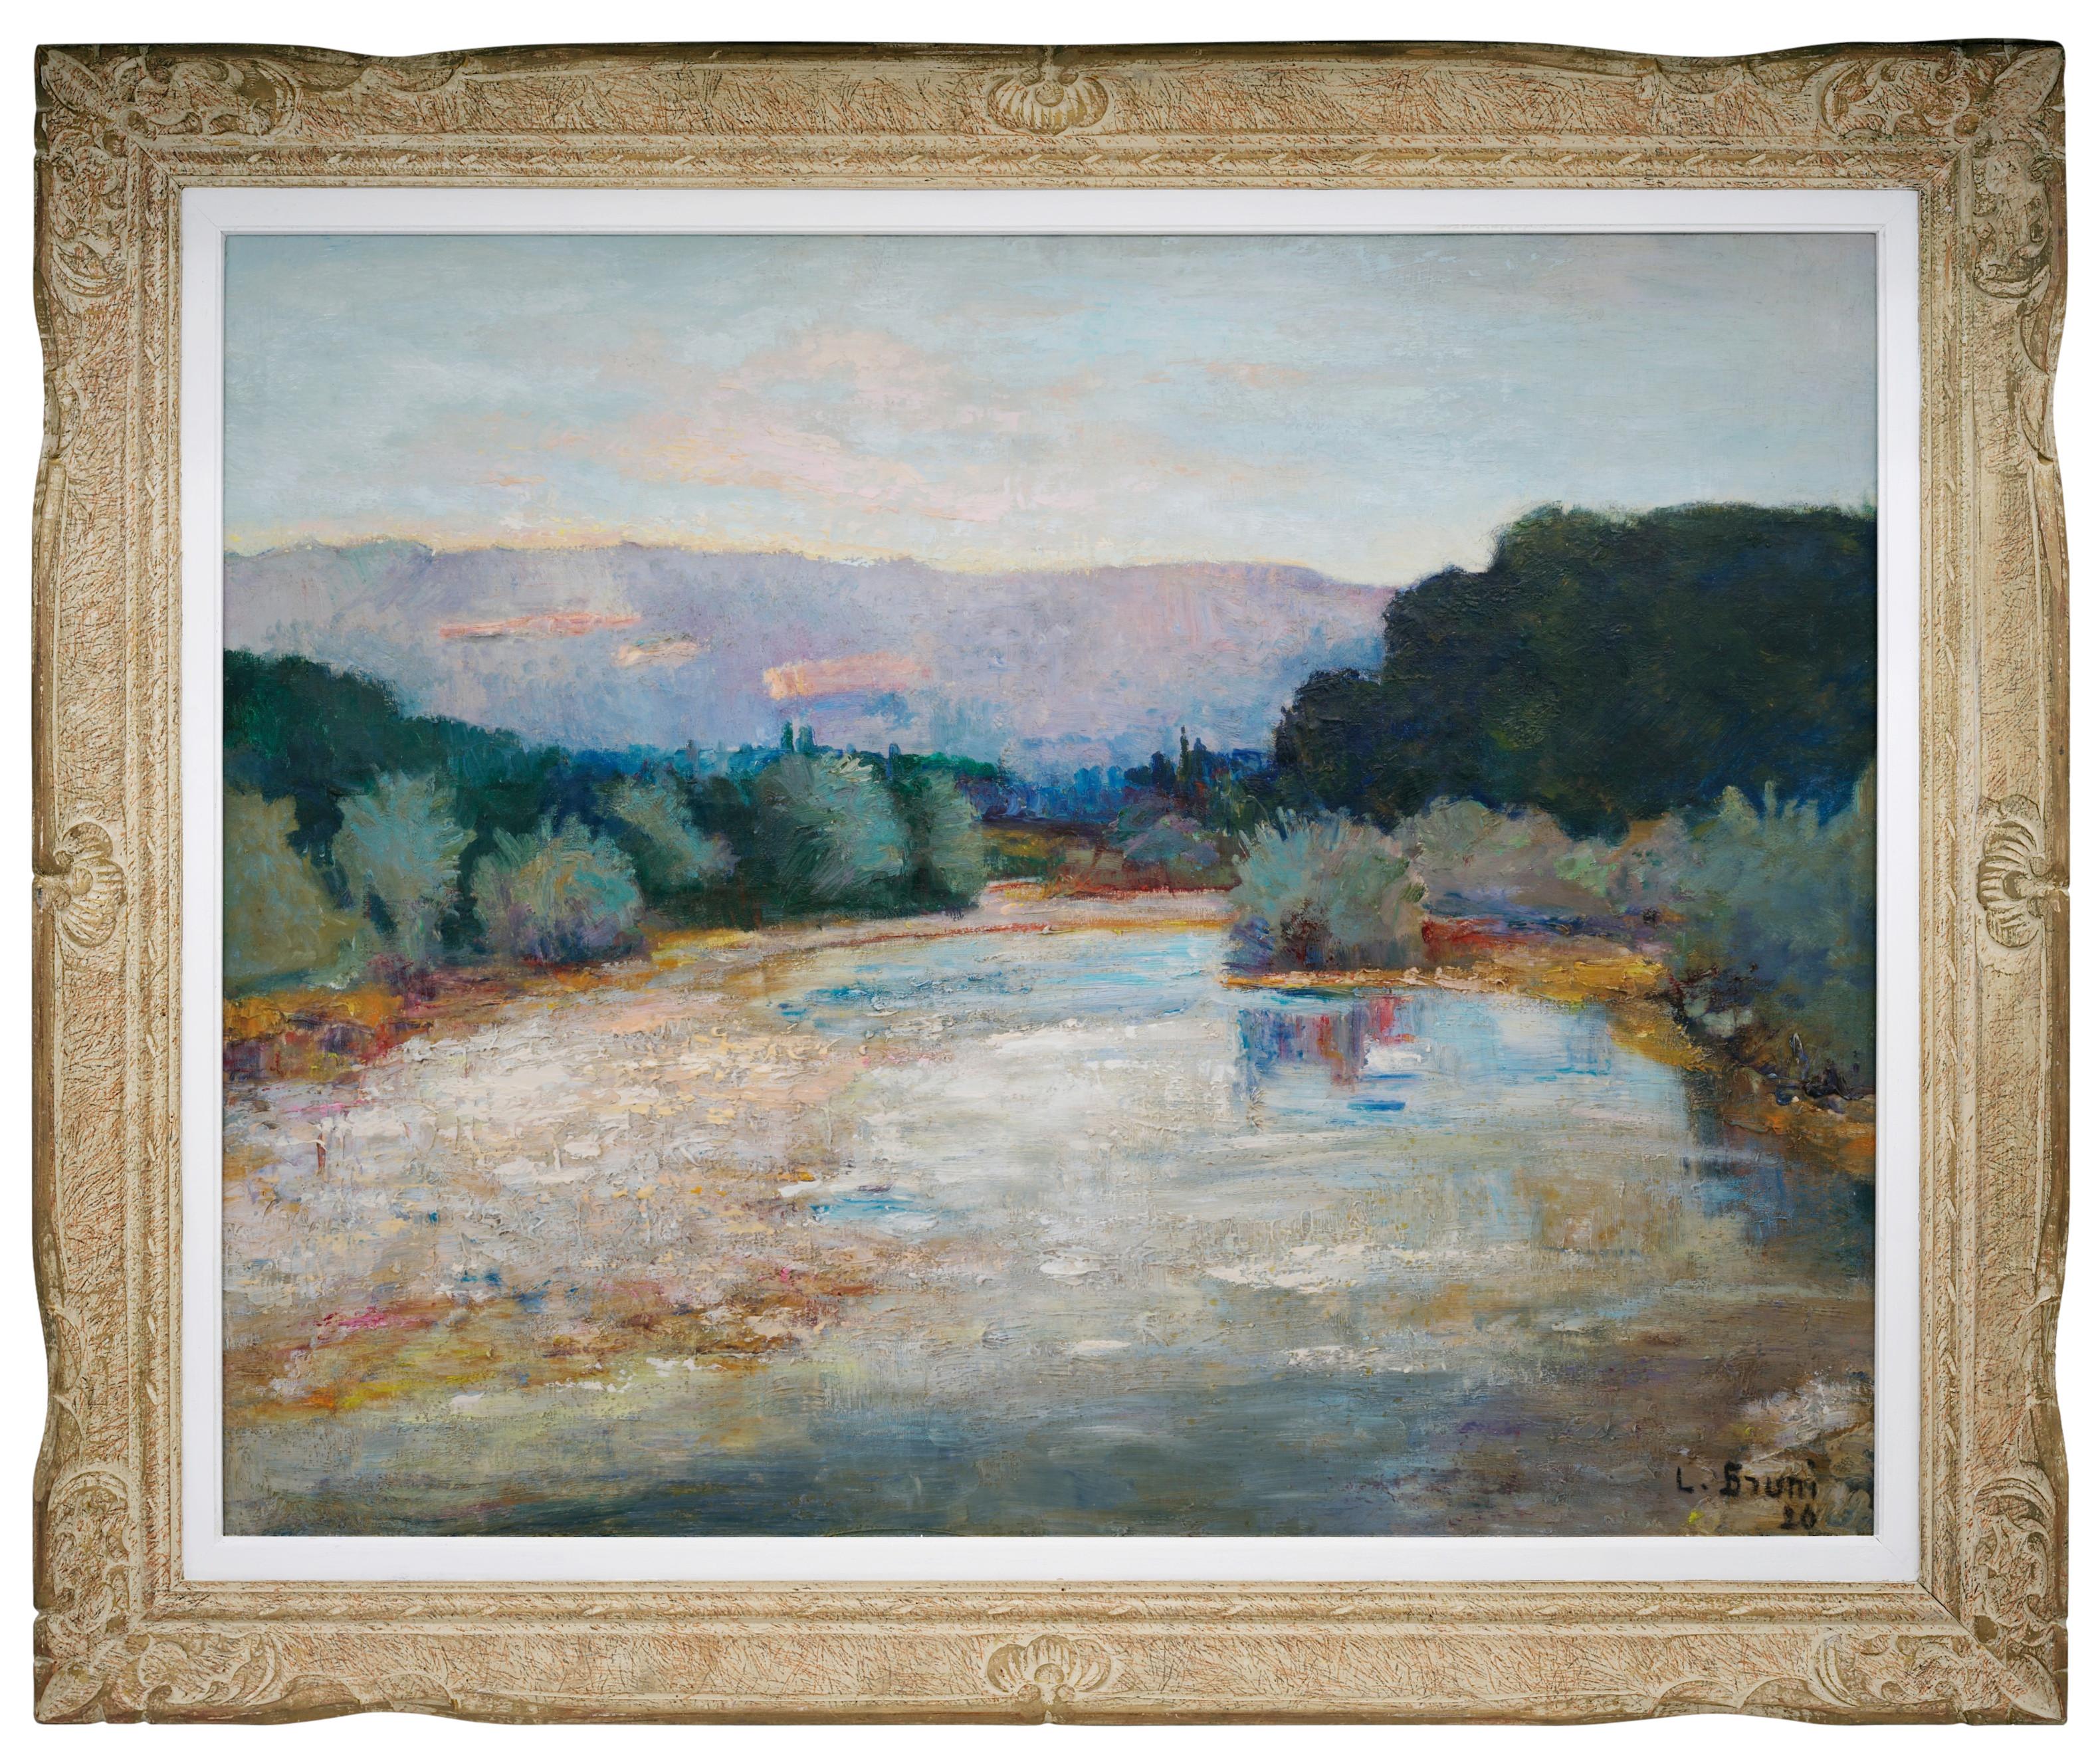 Landscape Painting Laure Stella Bruni - Laure Bruni, huile sur toile, "Paysage de la Drôme", 1926